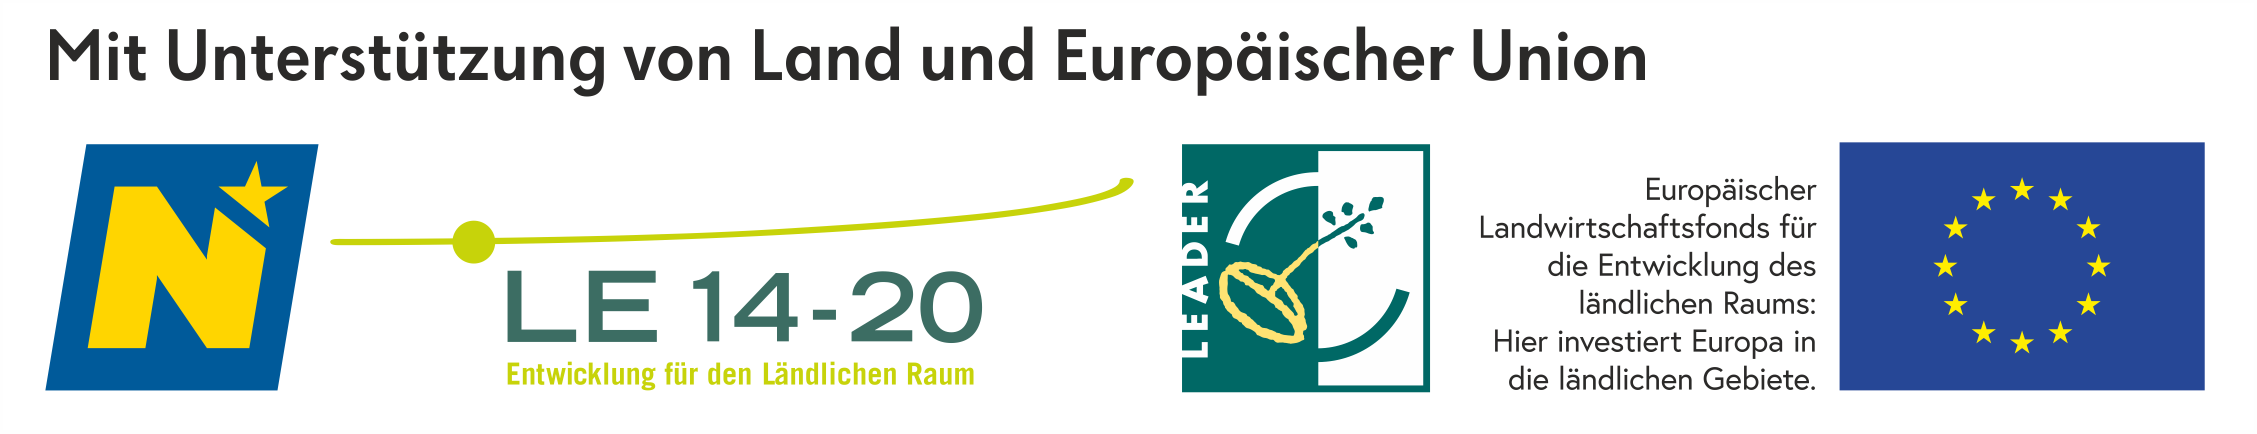 Logoleiste_eco_2020-12